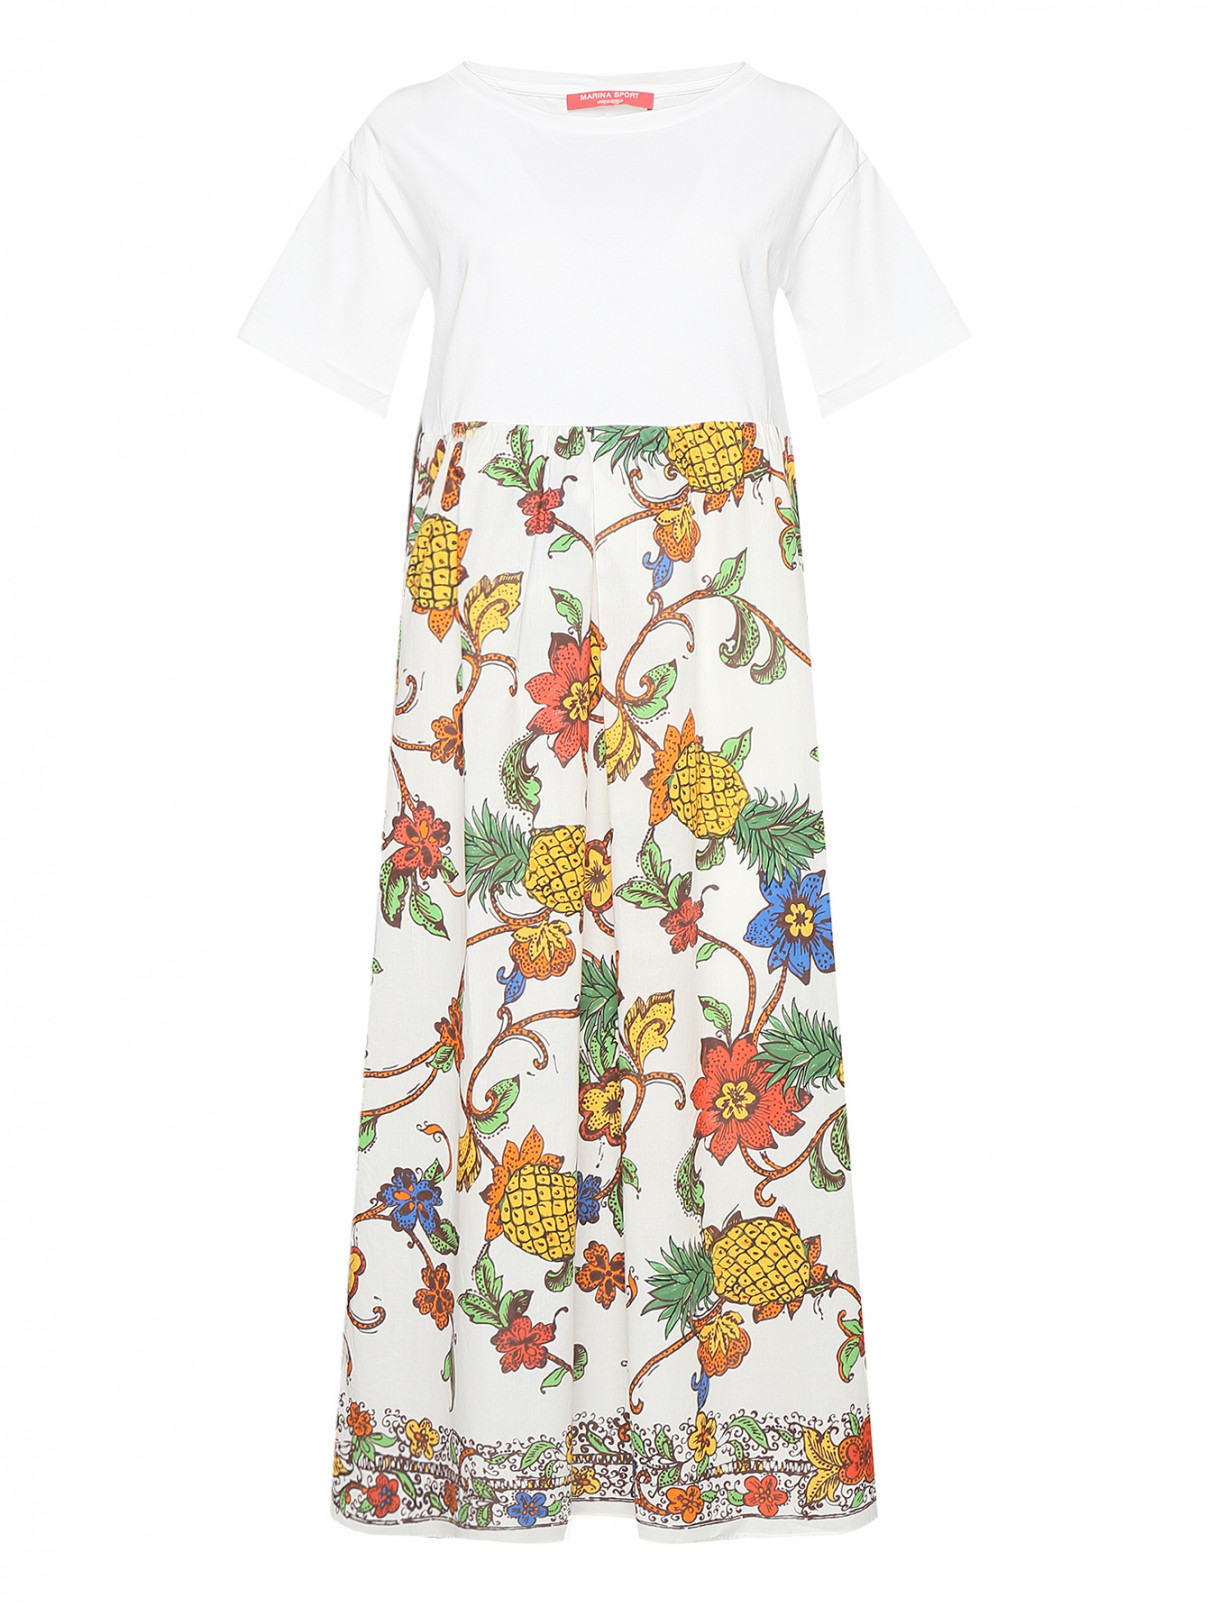 Комбинированное платье из хлопка с узором Marina Rinaldi  –  Общий вид  – Цвет:  Мультиколор